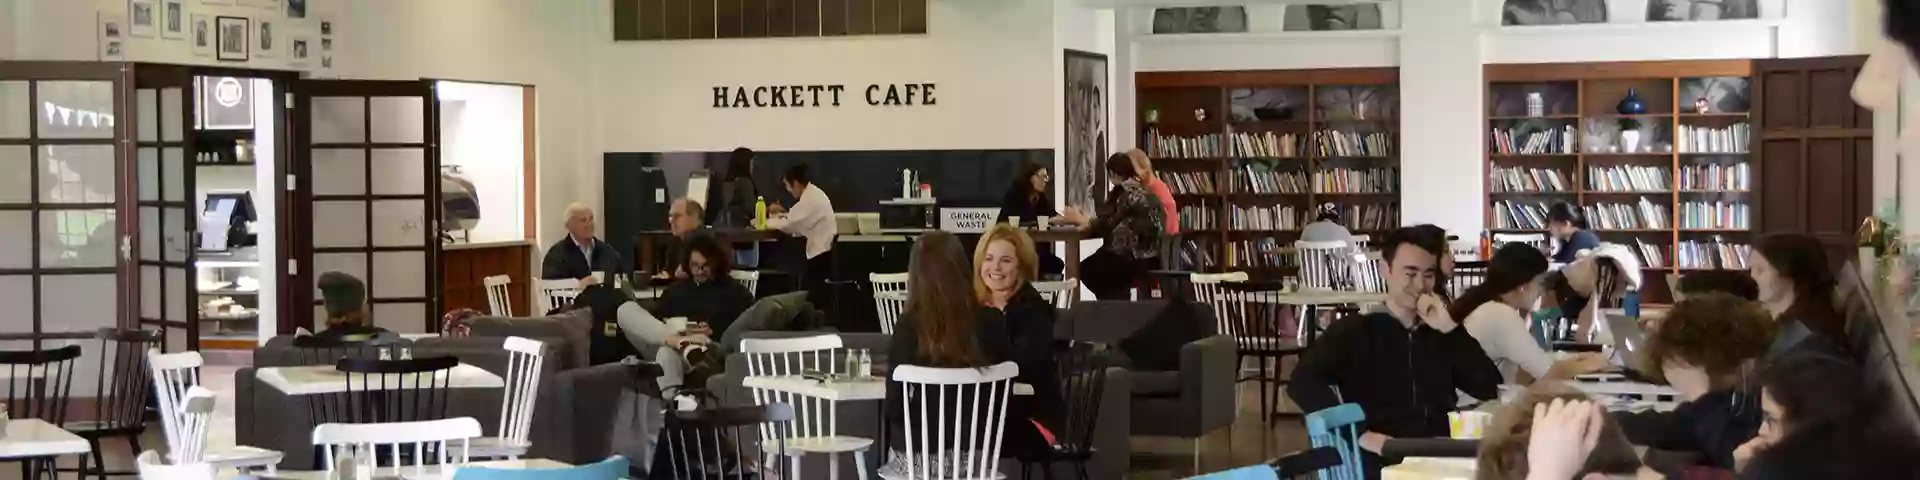 Hackett Cafe